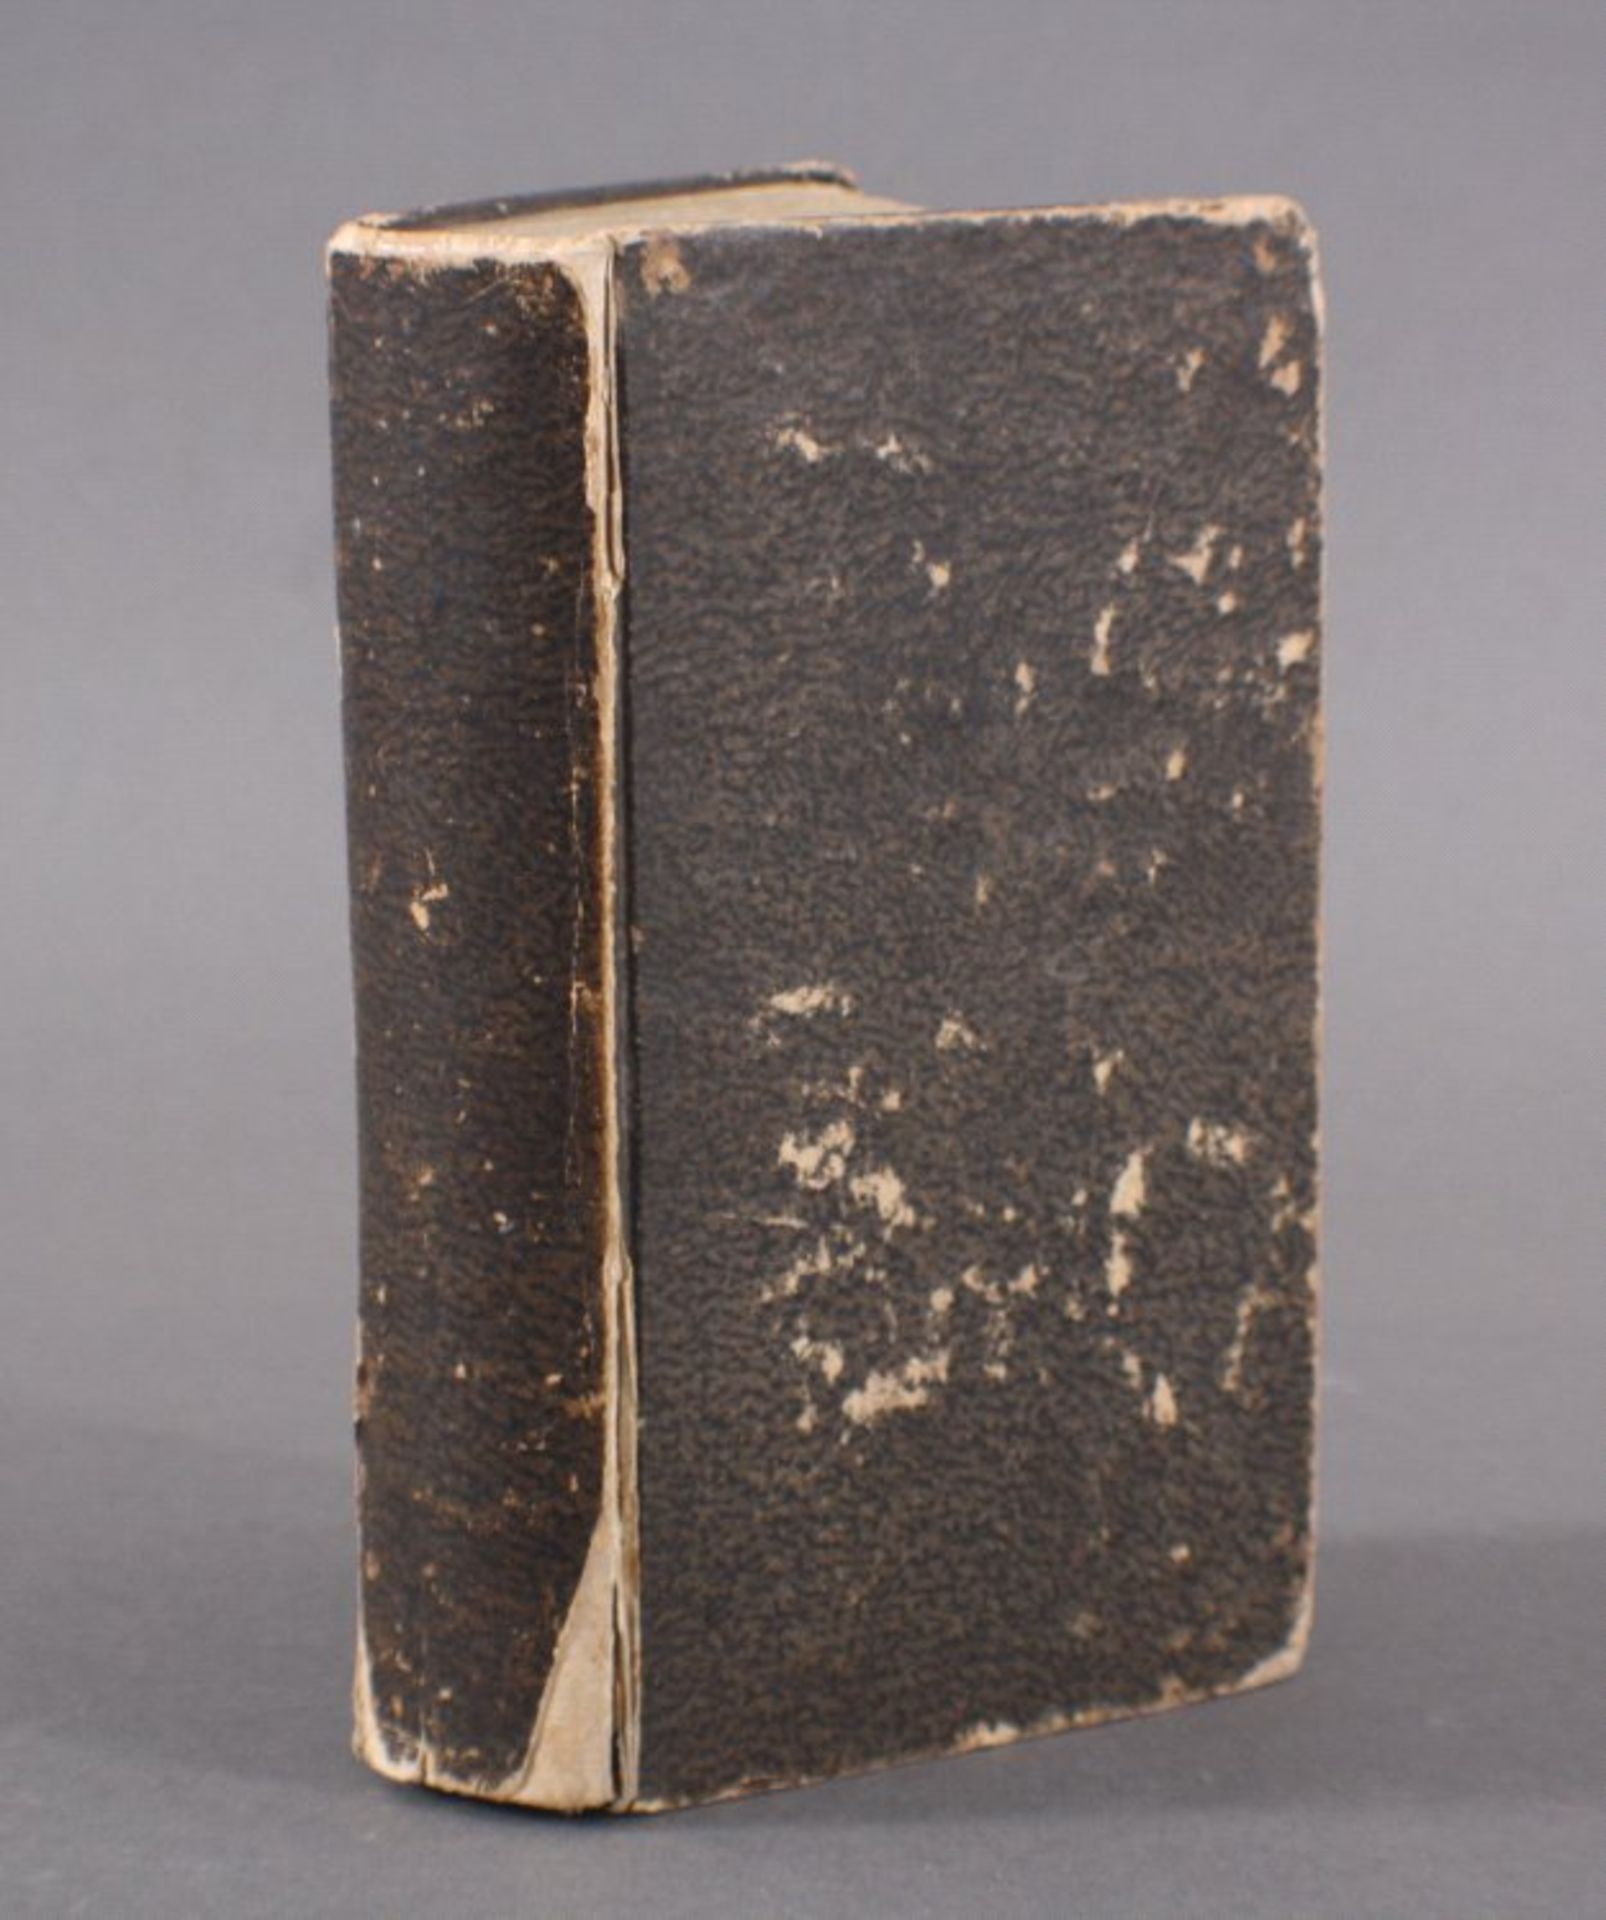 Altes Kochbuch, um 1800/1850Einband bestoßen, berieben, teilweise eingerissen,Seitenränder